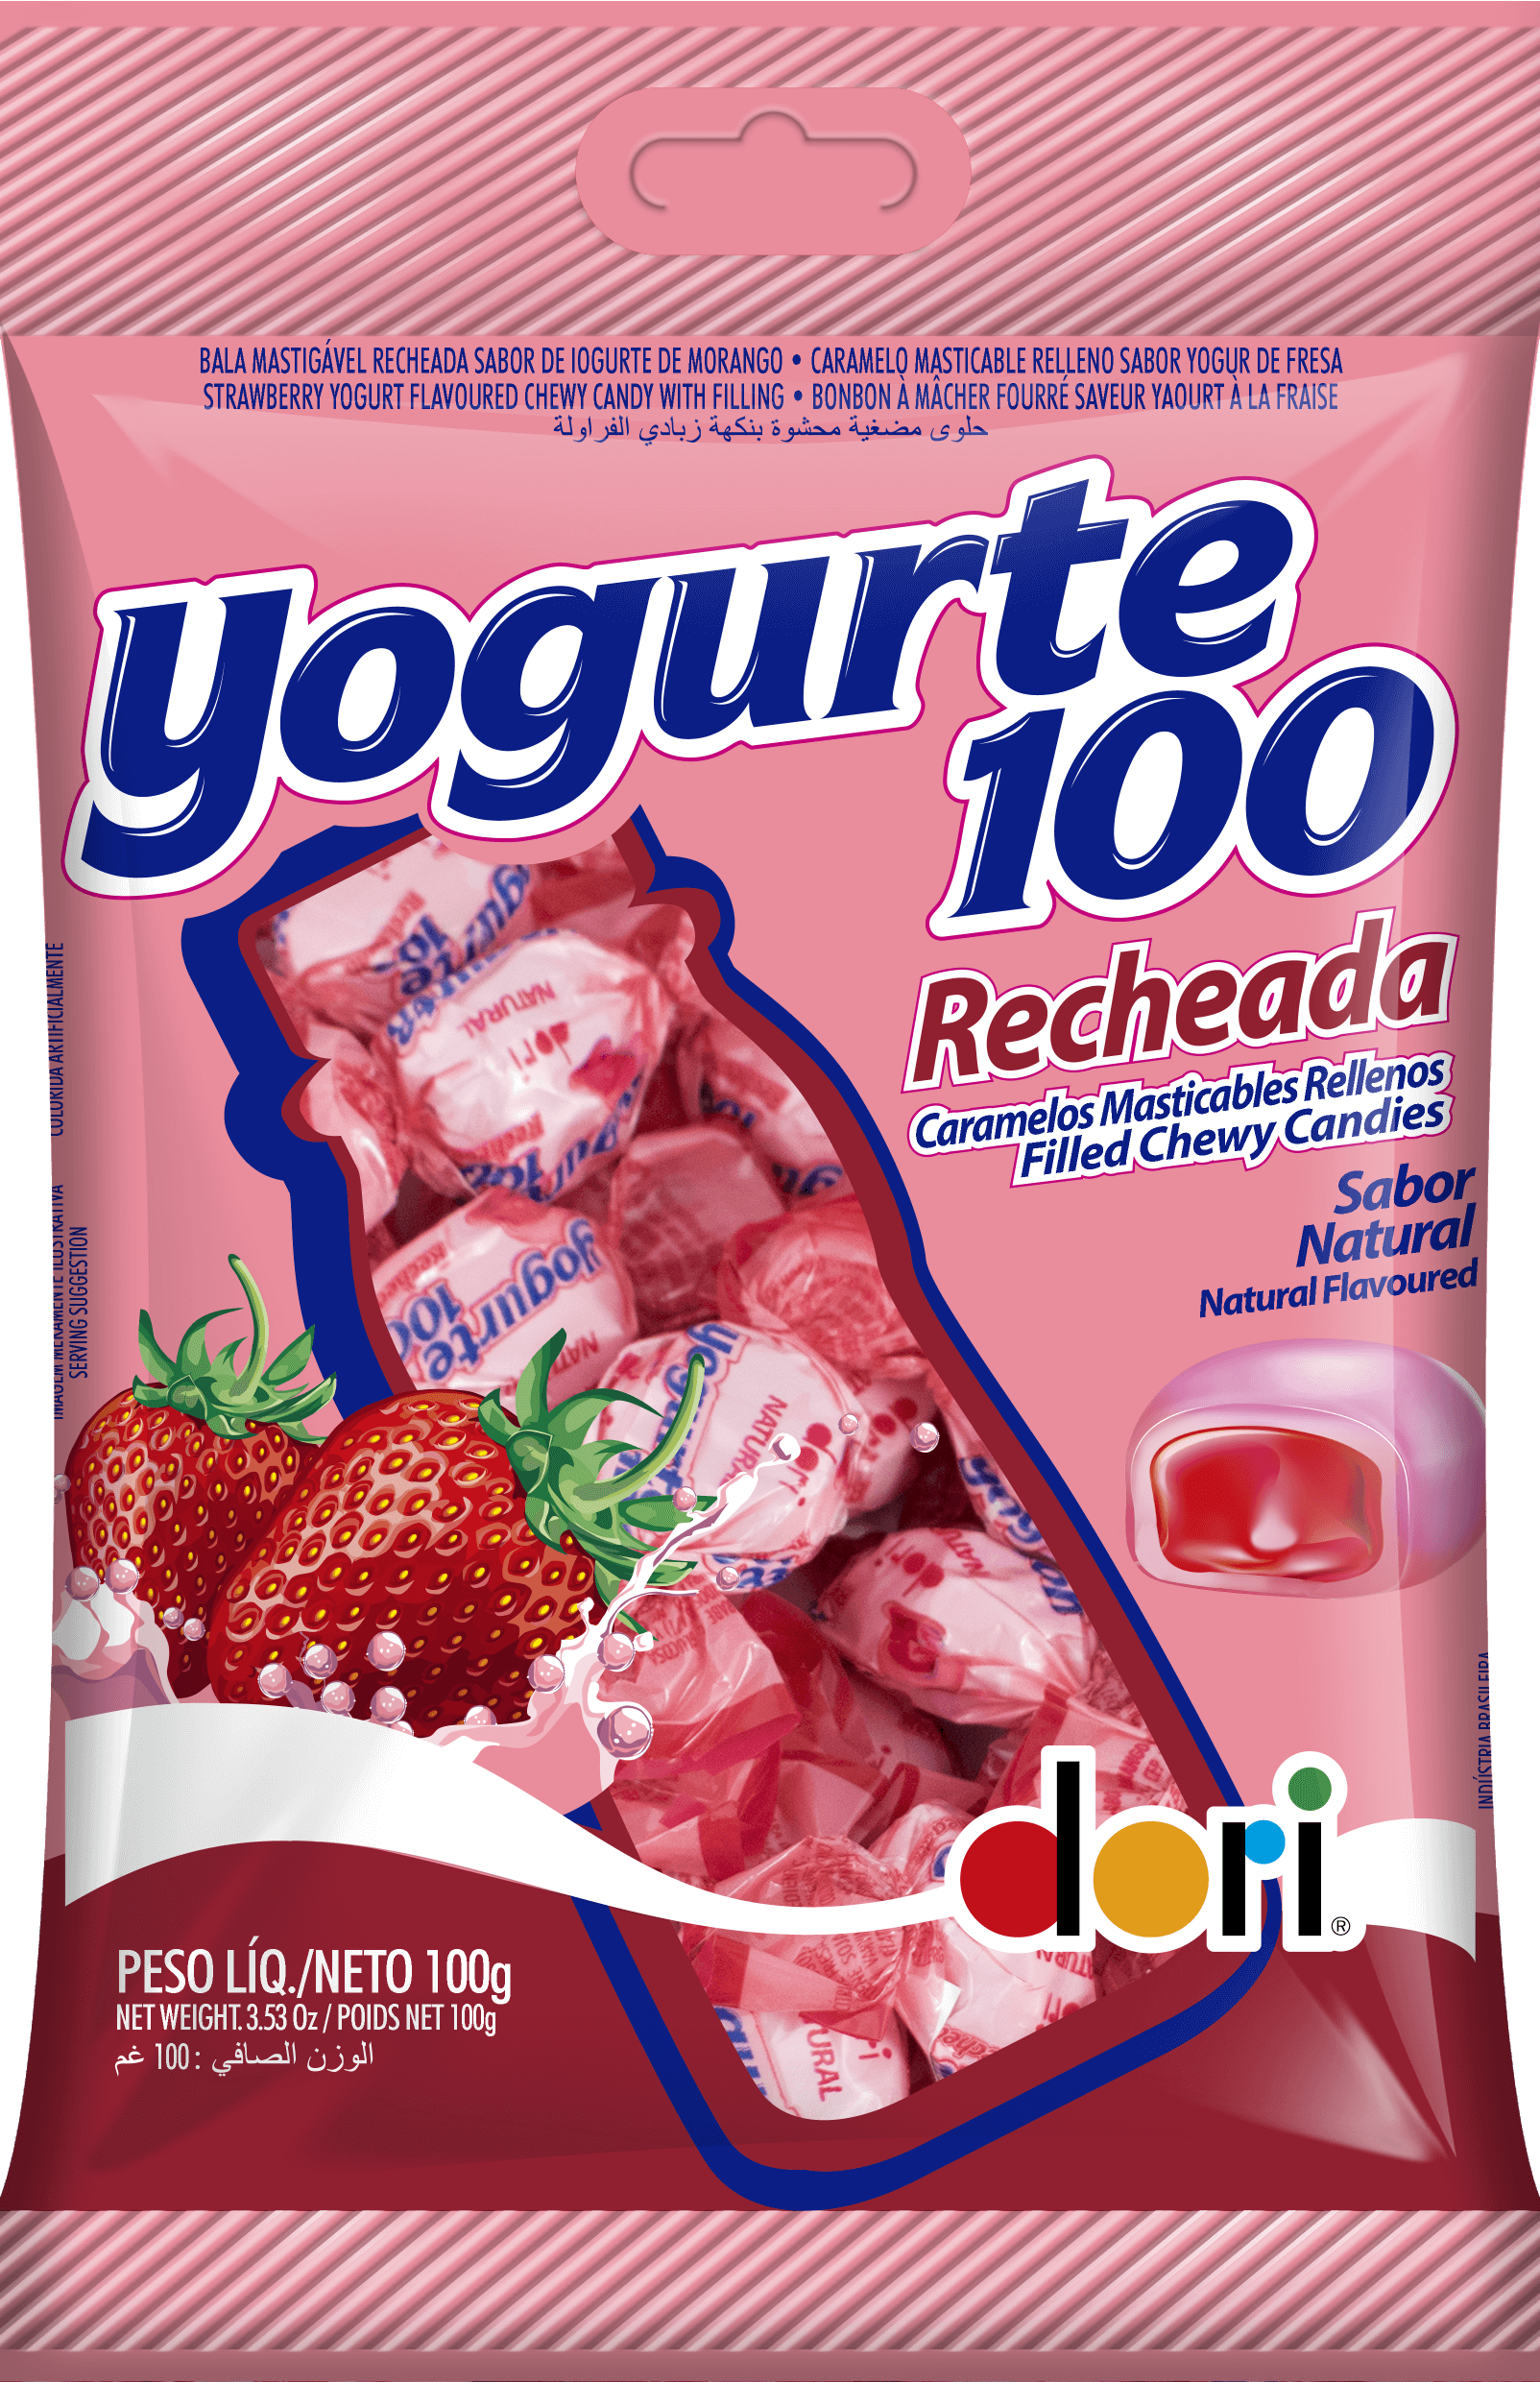 DORI - Bala de iogurte de morango recheada - 100g